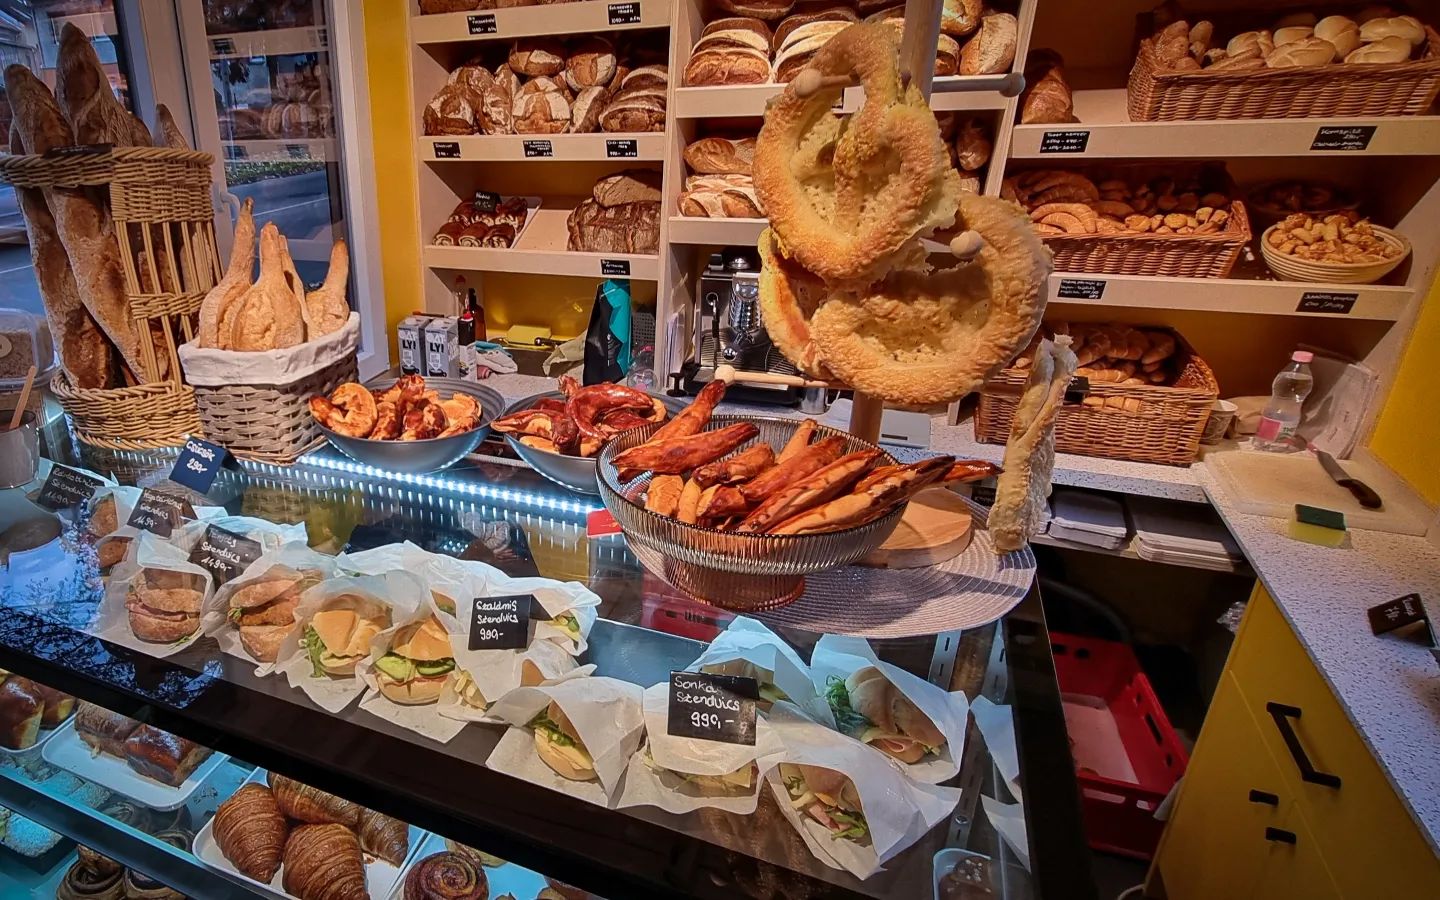 麵包店, Hungary, Hungarian, bread, consumption